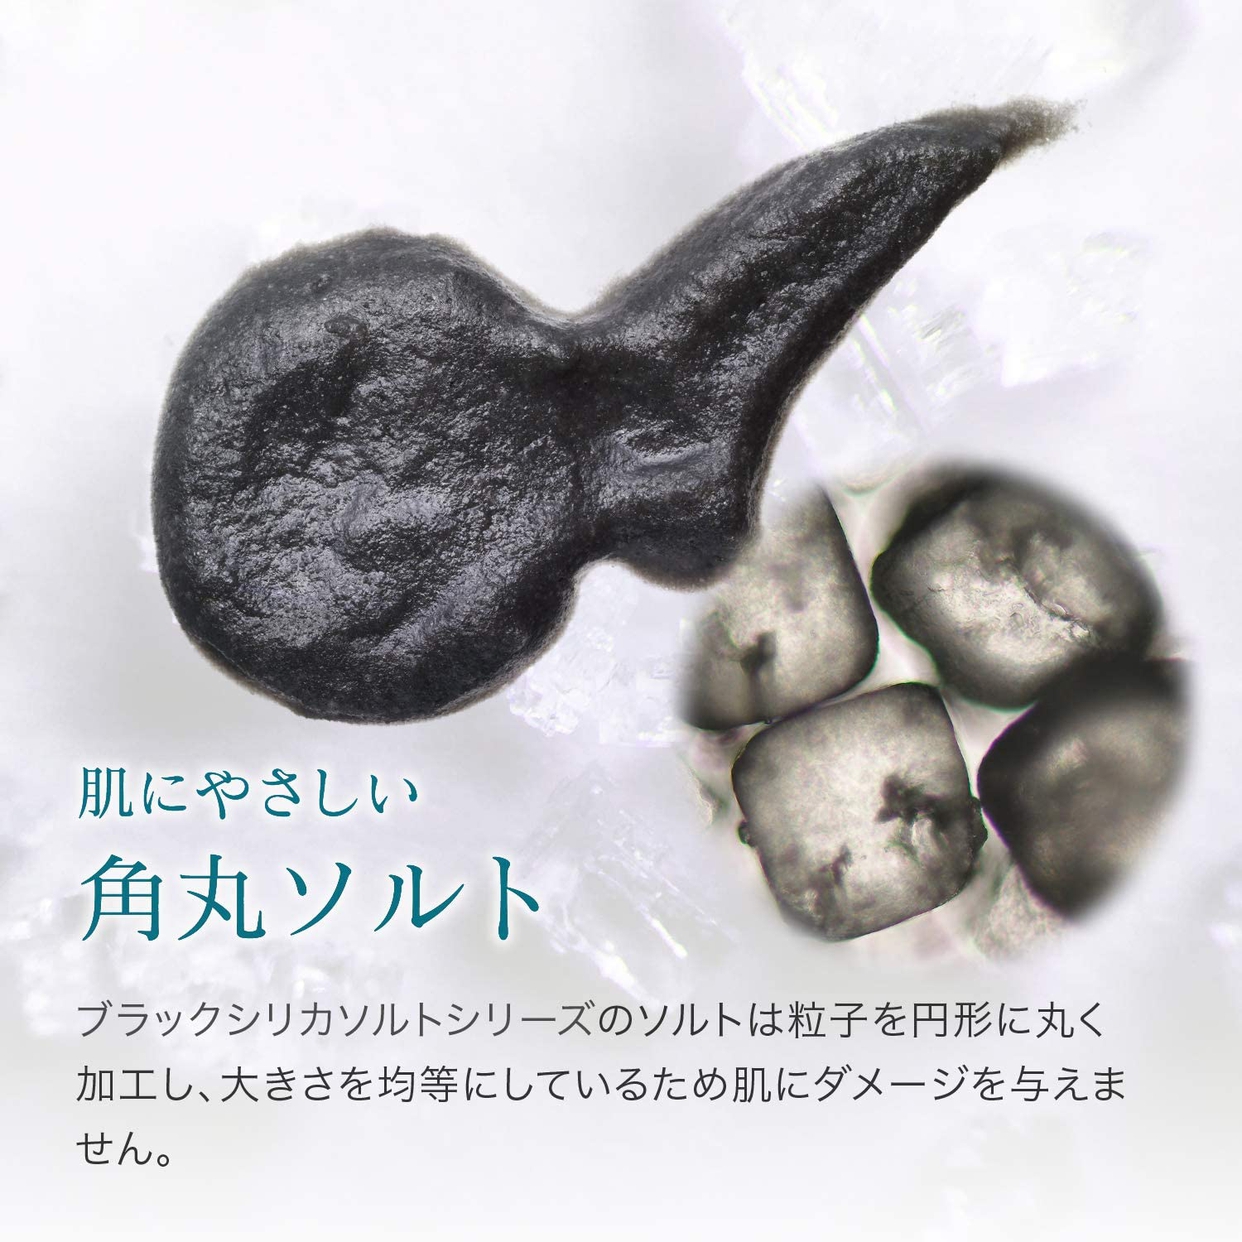 Black Silica Salt(ブラックシリカソルト) フェイシャル エステの商品画像サムネ5 